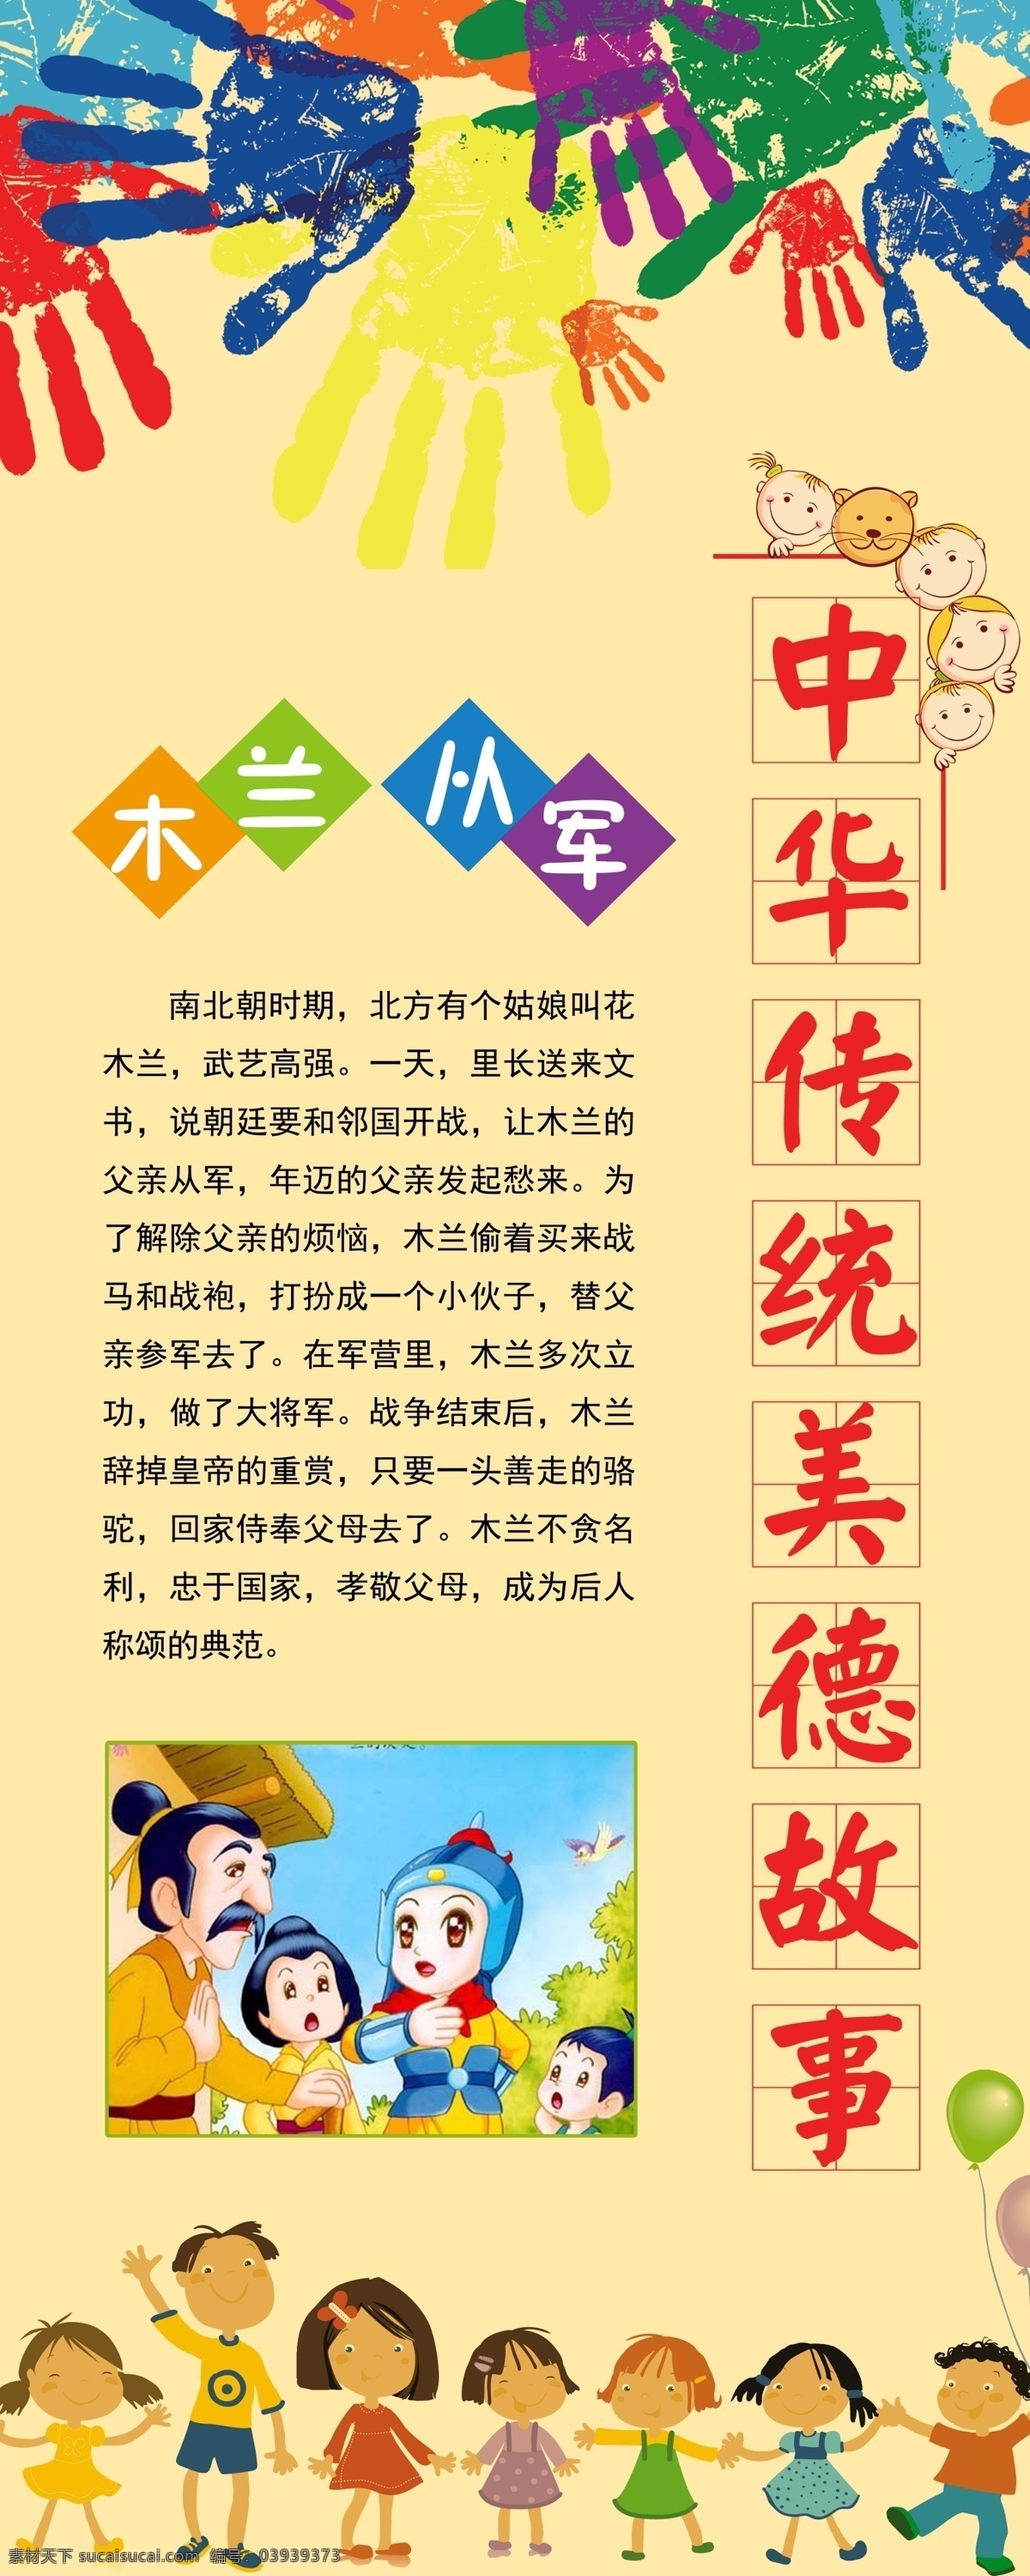 传统美德 传统故事 中华传统 木兰从军 黄色